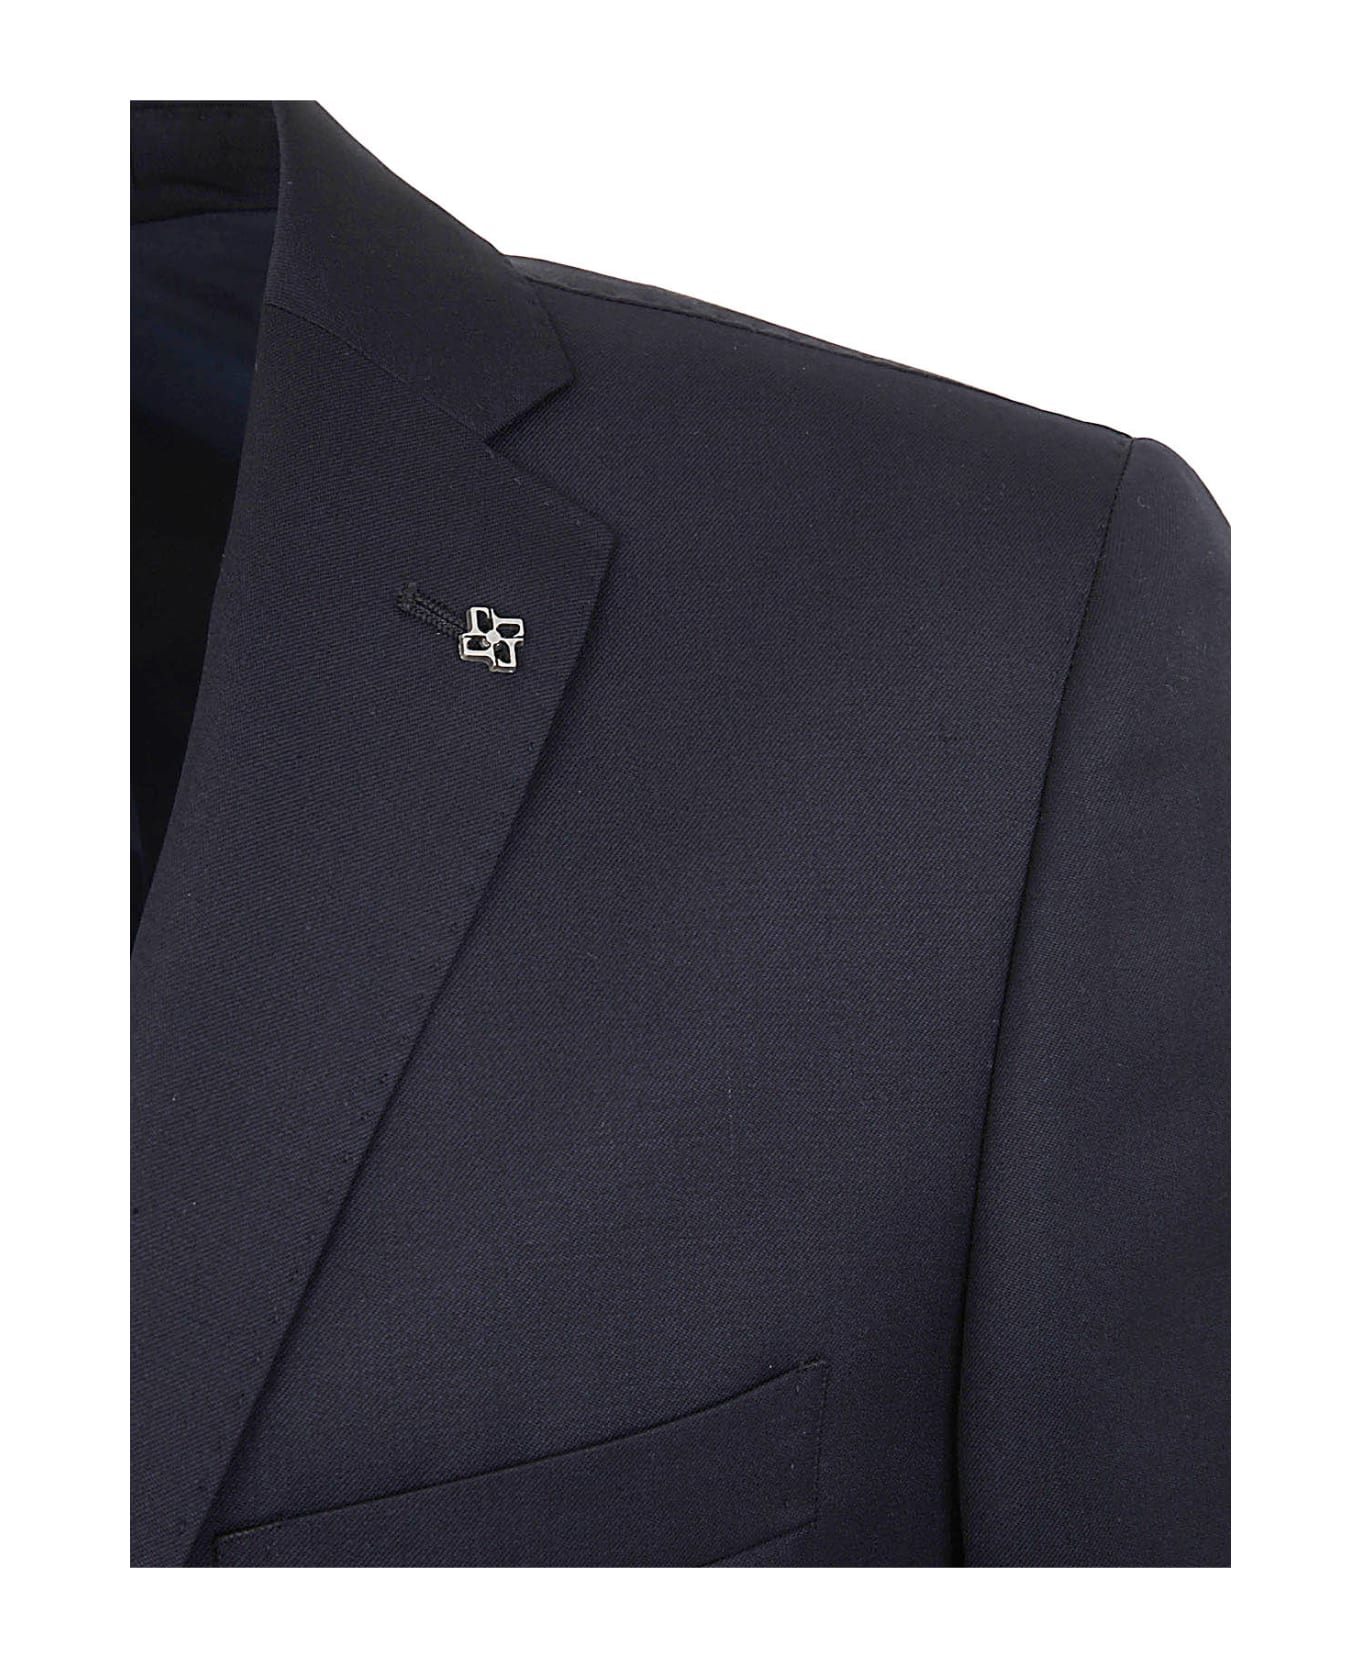 Tagliatore Elegant Trouser Suit - Navy スーツ